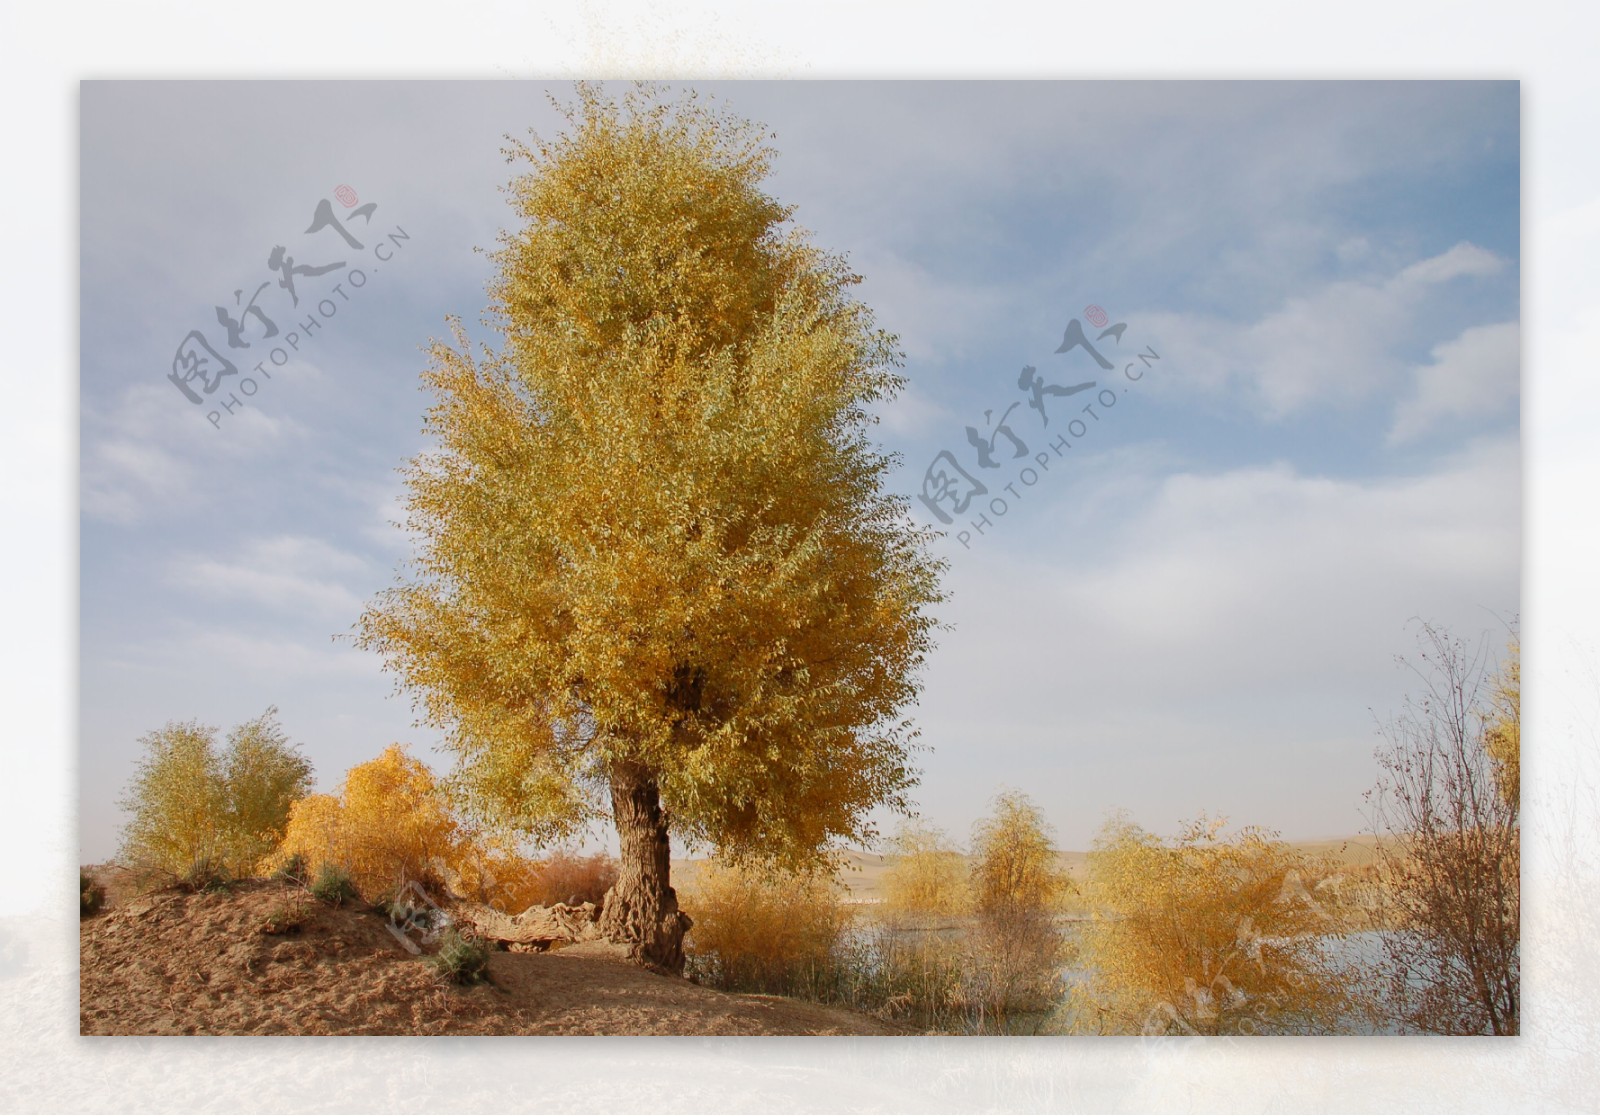 美丽的新疆戈壁树木图片